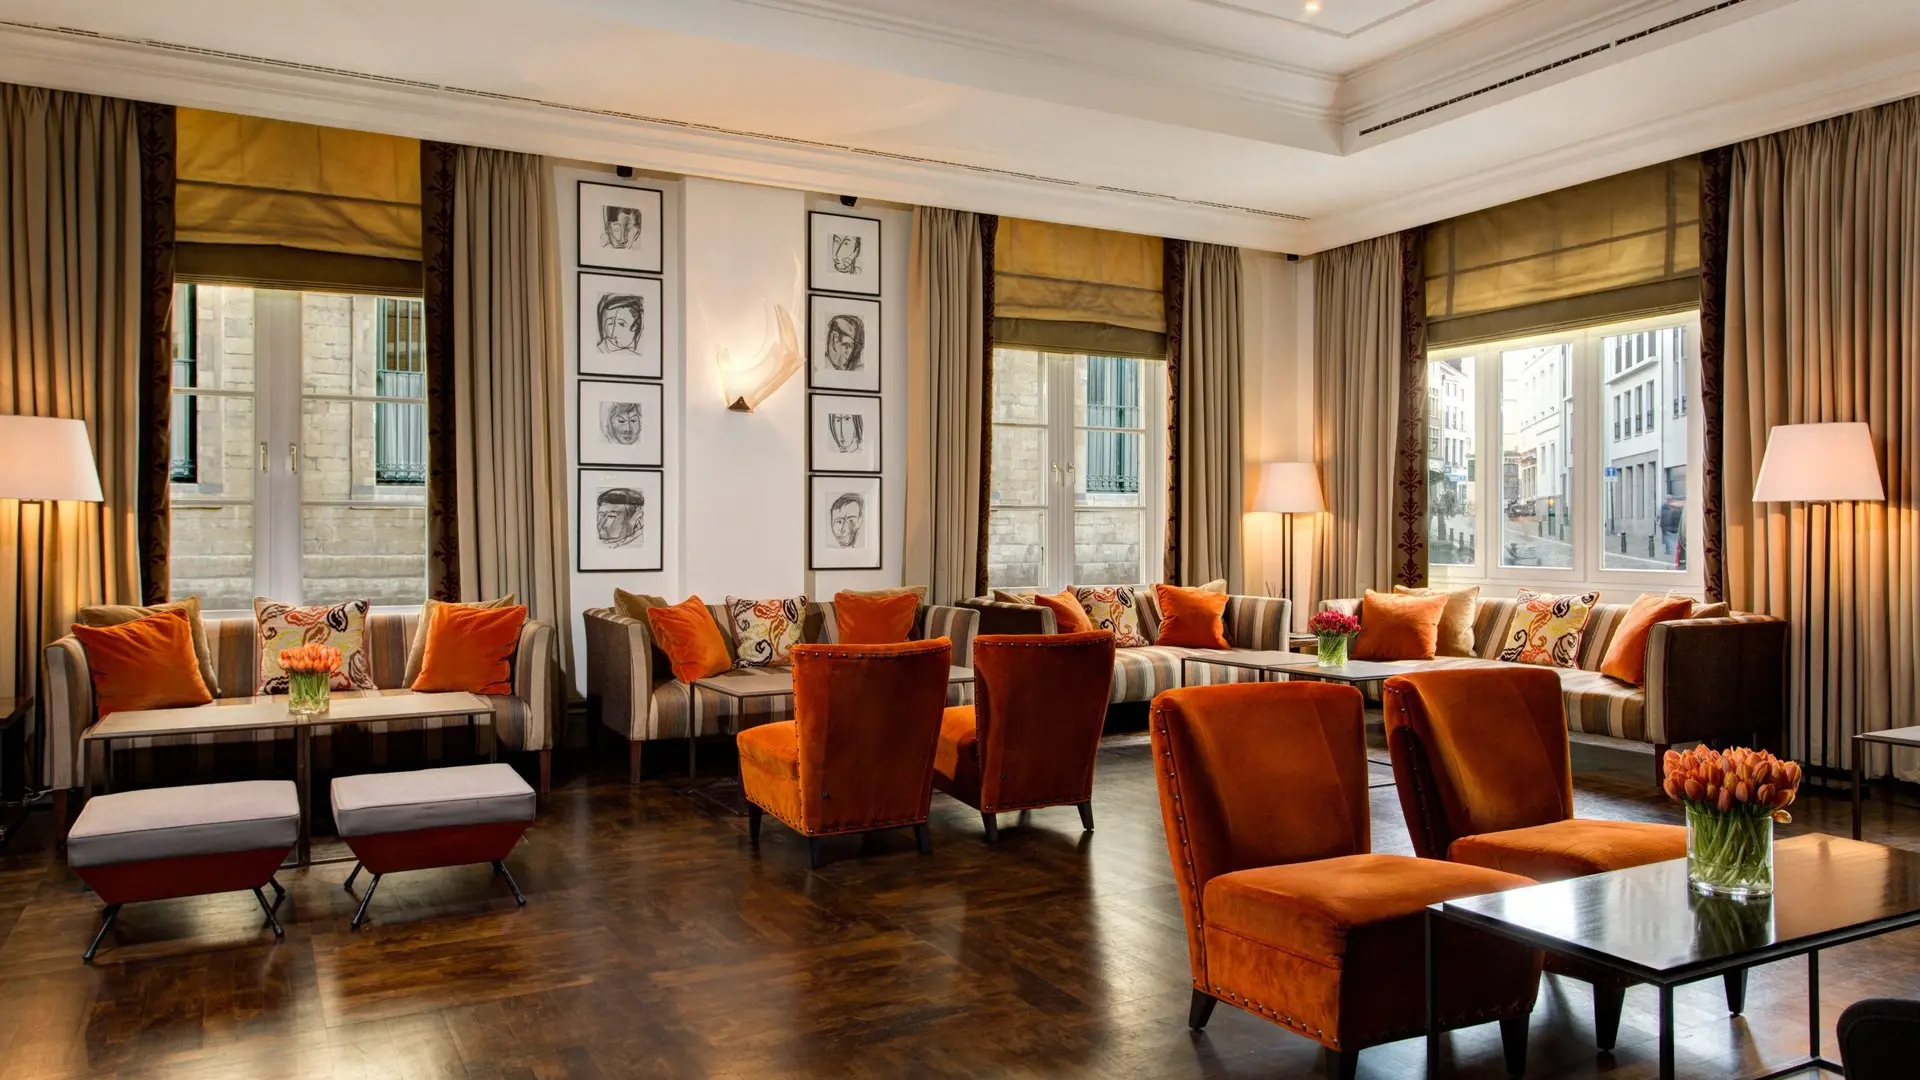 Hotel review Restaurants & Bars' - Rocco Forte Hotel Amigo - 4